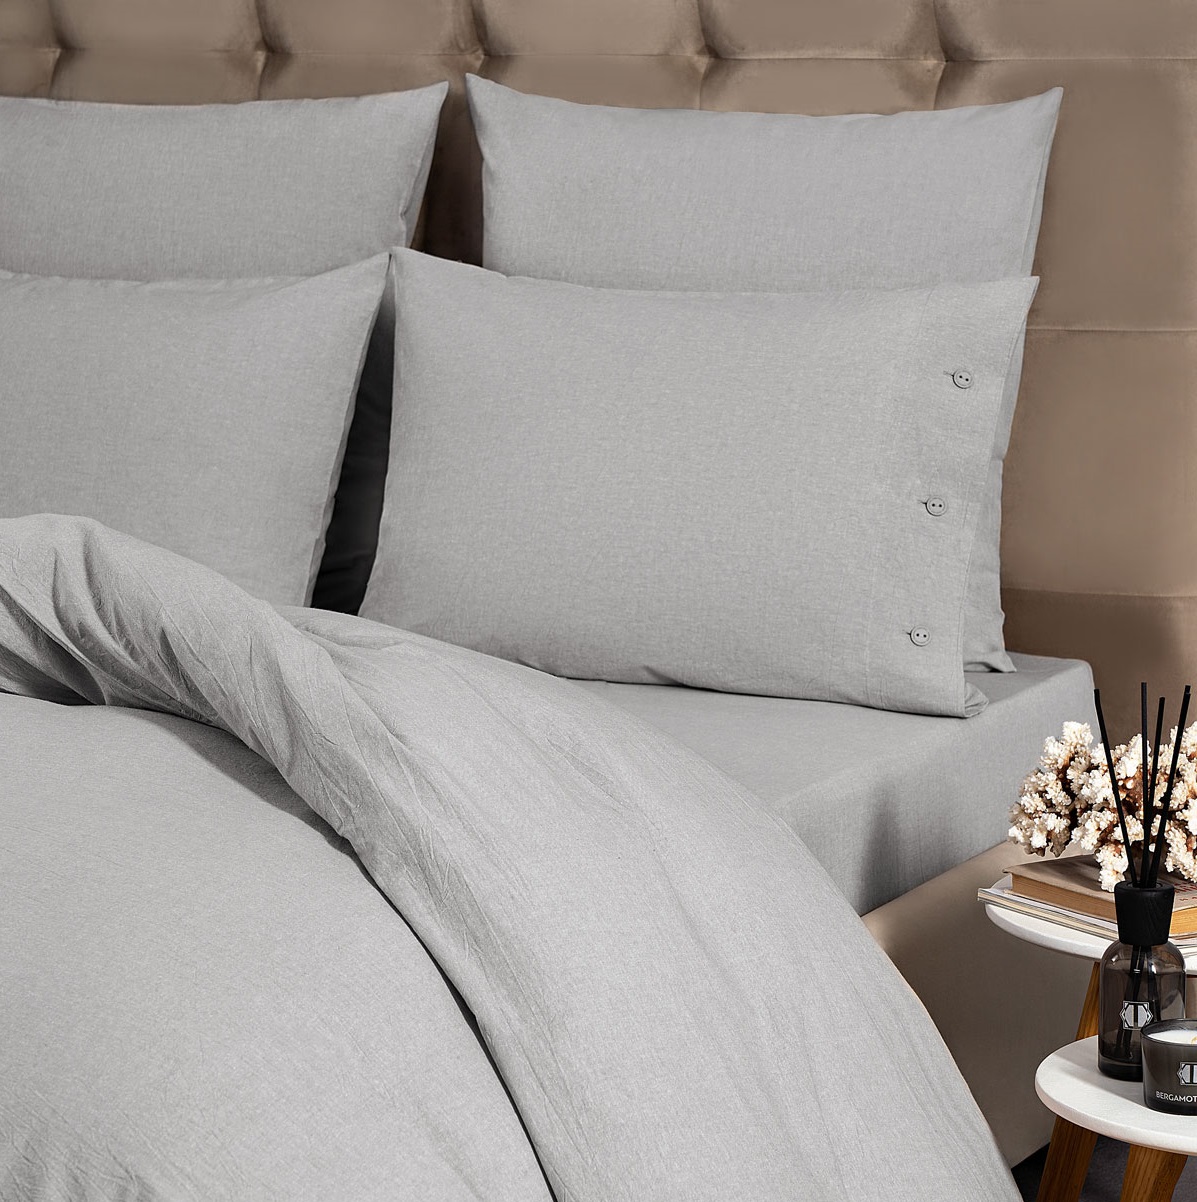 Комплект постельного белья Prime Prive Смоген Двуспальный кинг сайз светло-серый, размер Кинг сайз - фото 3